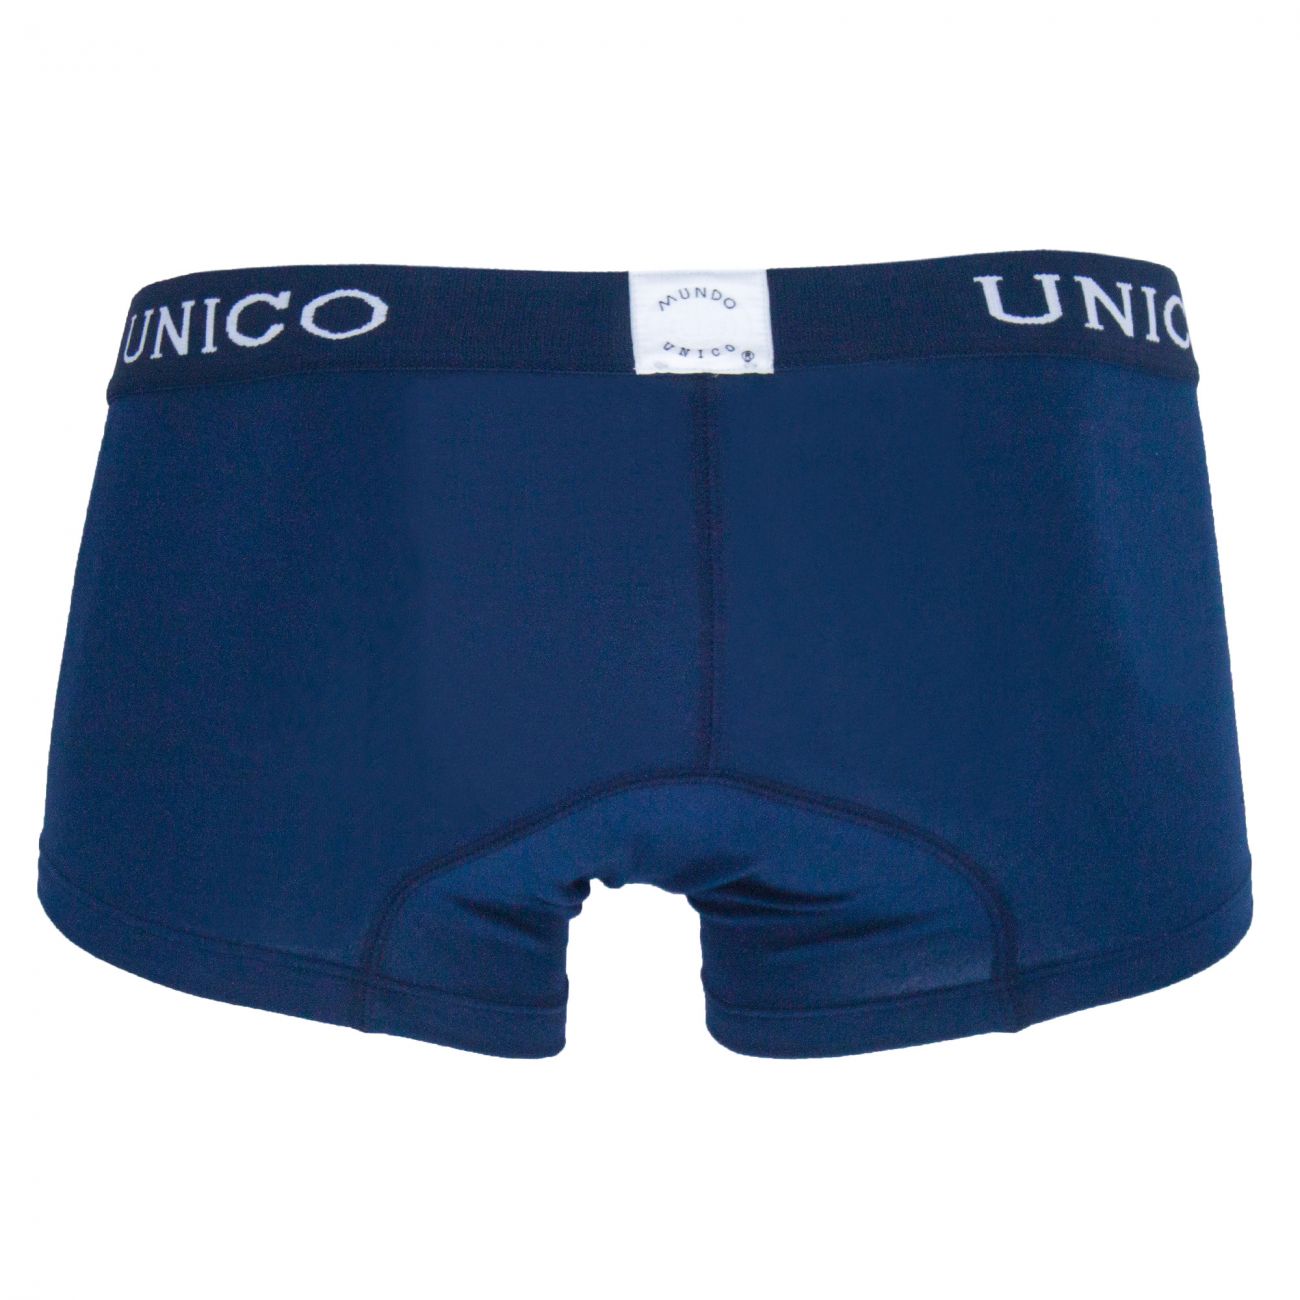 Unico 9610080182 Boxer Briefs Profundo Blue